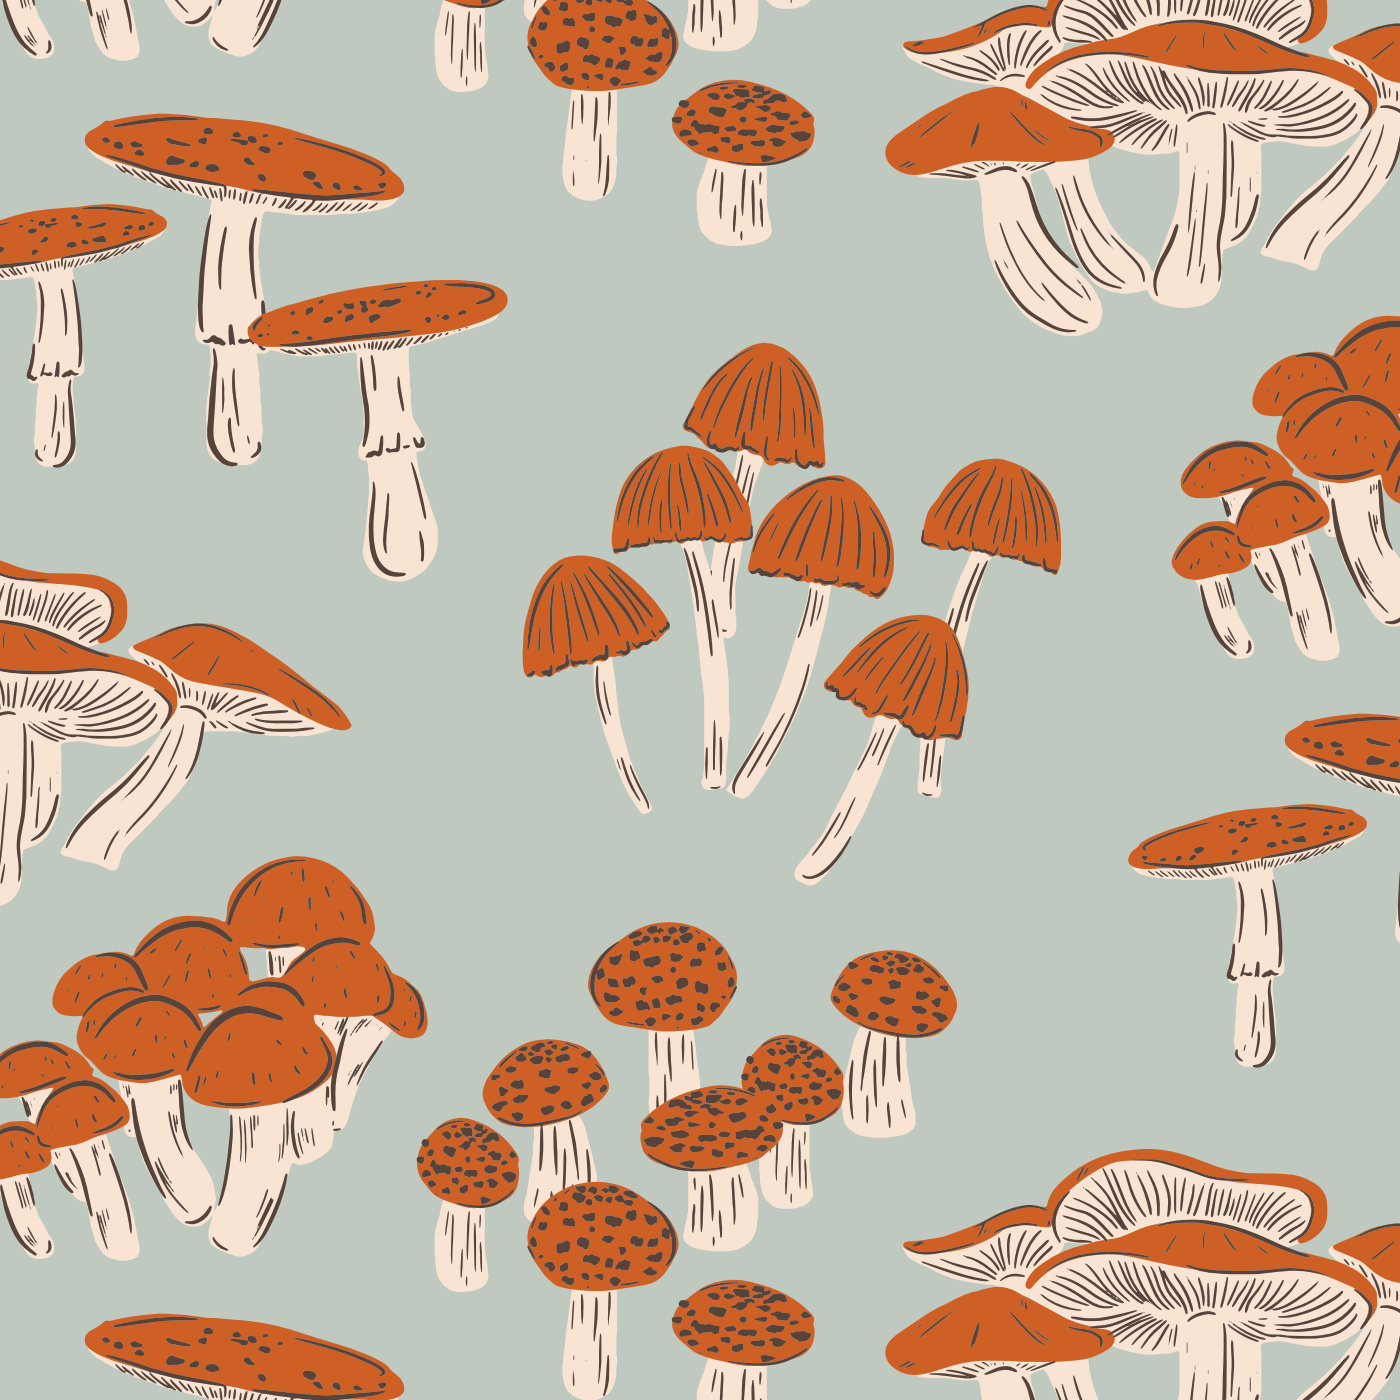 Watercolor Mushroom Wallpaper Graphic by Aspect_Studio · Creative Fabrica